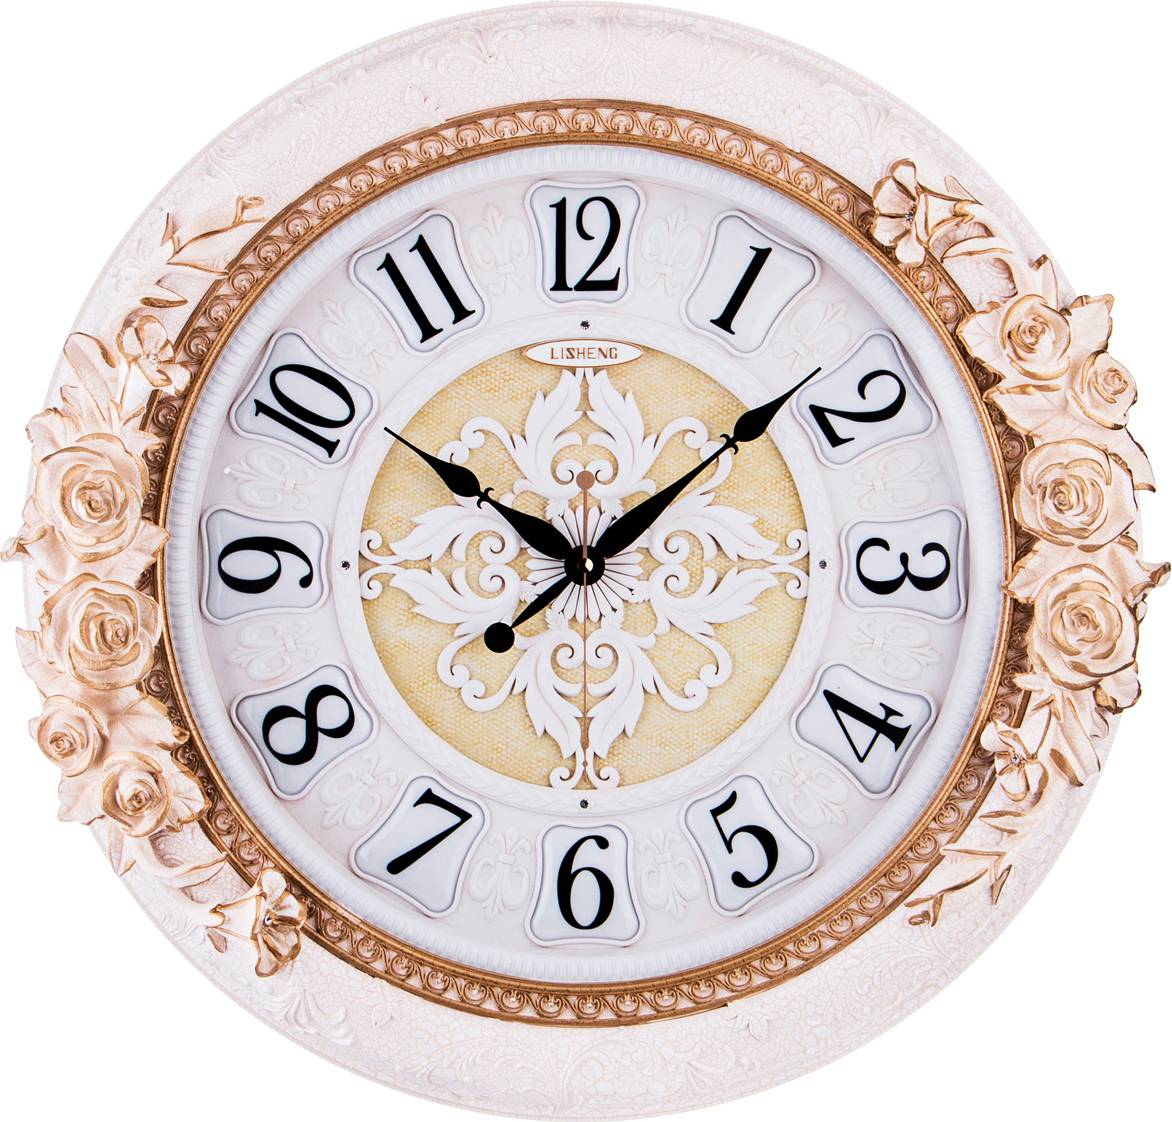 Часы настенные 50 см. Часы настенные кварцевые Lefard 204-144. Часы кварцевые настенные Lefard, 40x9x63 см (арт 204-247). Часы часы настенные Lefard Marble белый. Часы Lefard настенные.